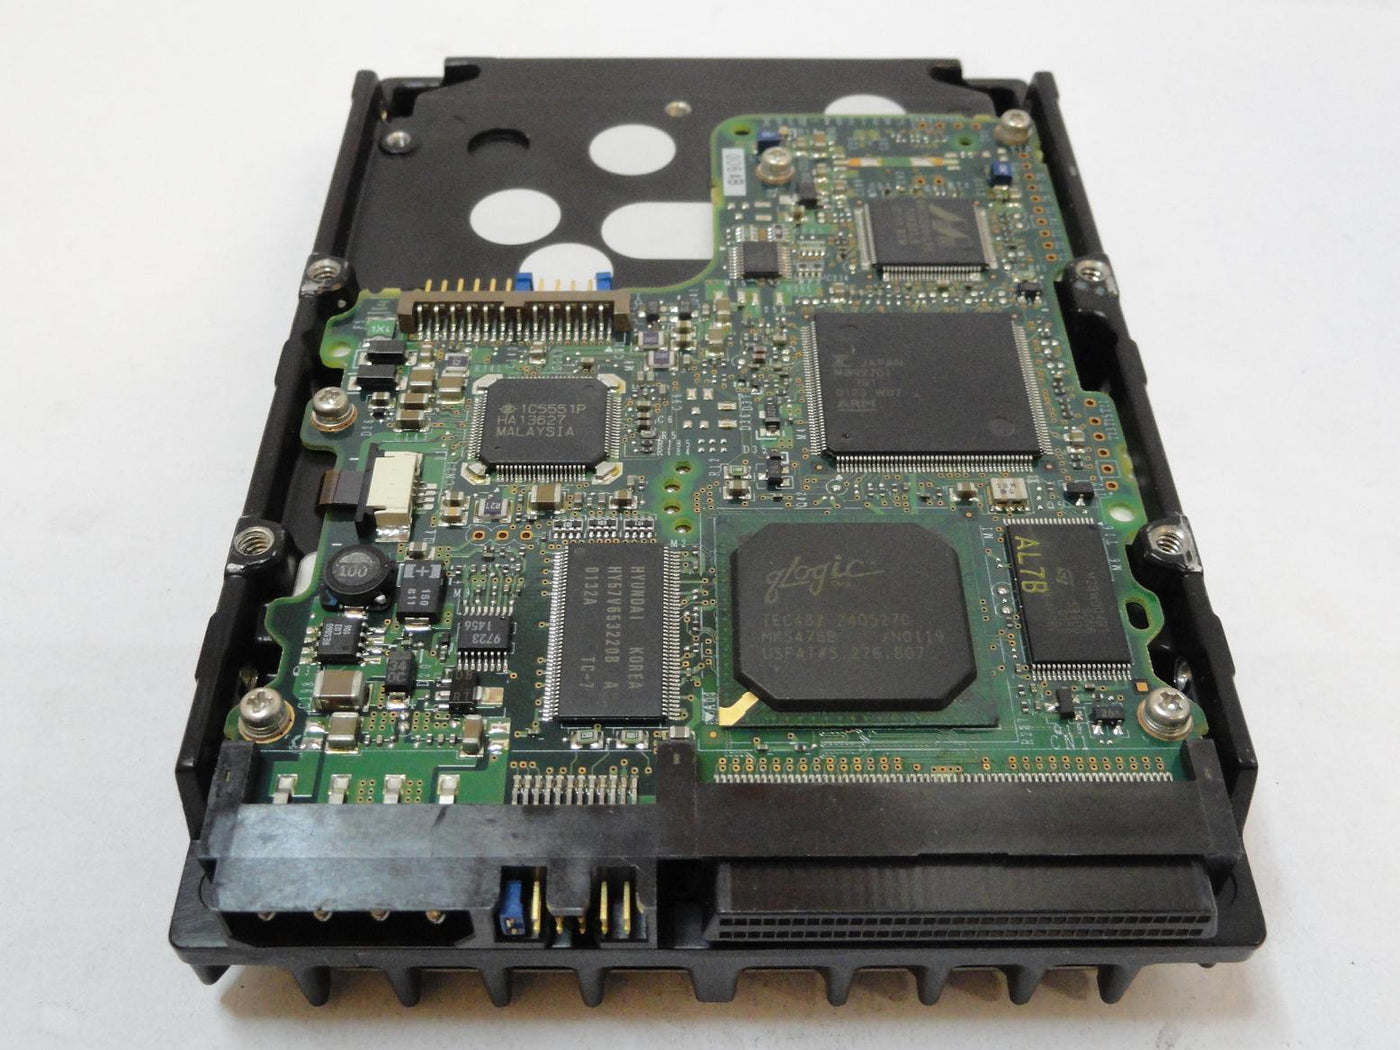 PR24373_CA05904-B29700EU_Fujitsu 36GB SCSI 68 Pin 10Krpm 3.5in HDD - Image2